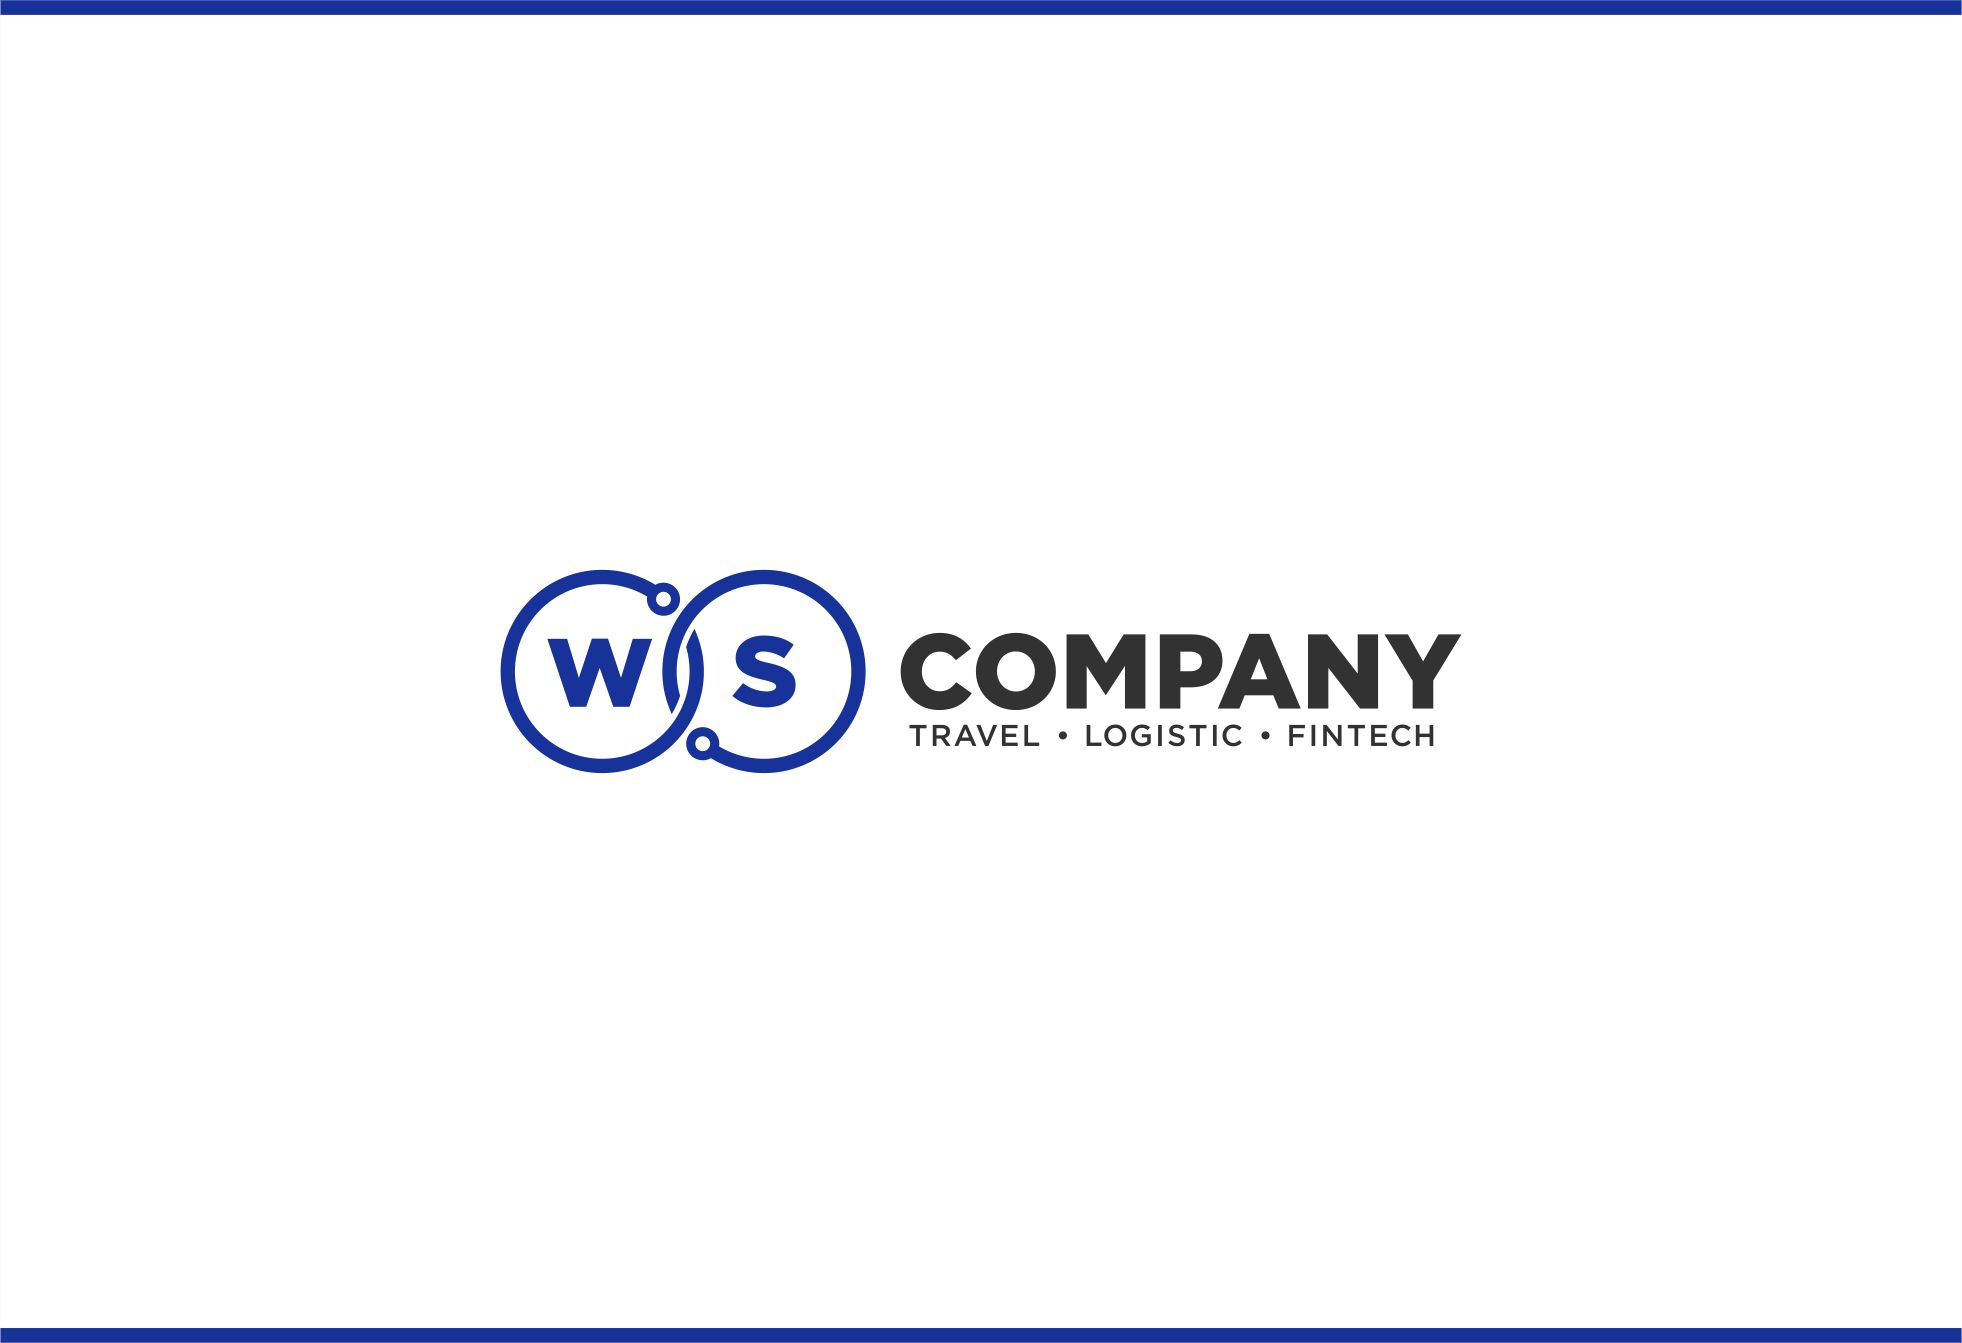 Логотип для WS.Company — Travel - Logistic - Fintech - дизайнер JMarcus